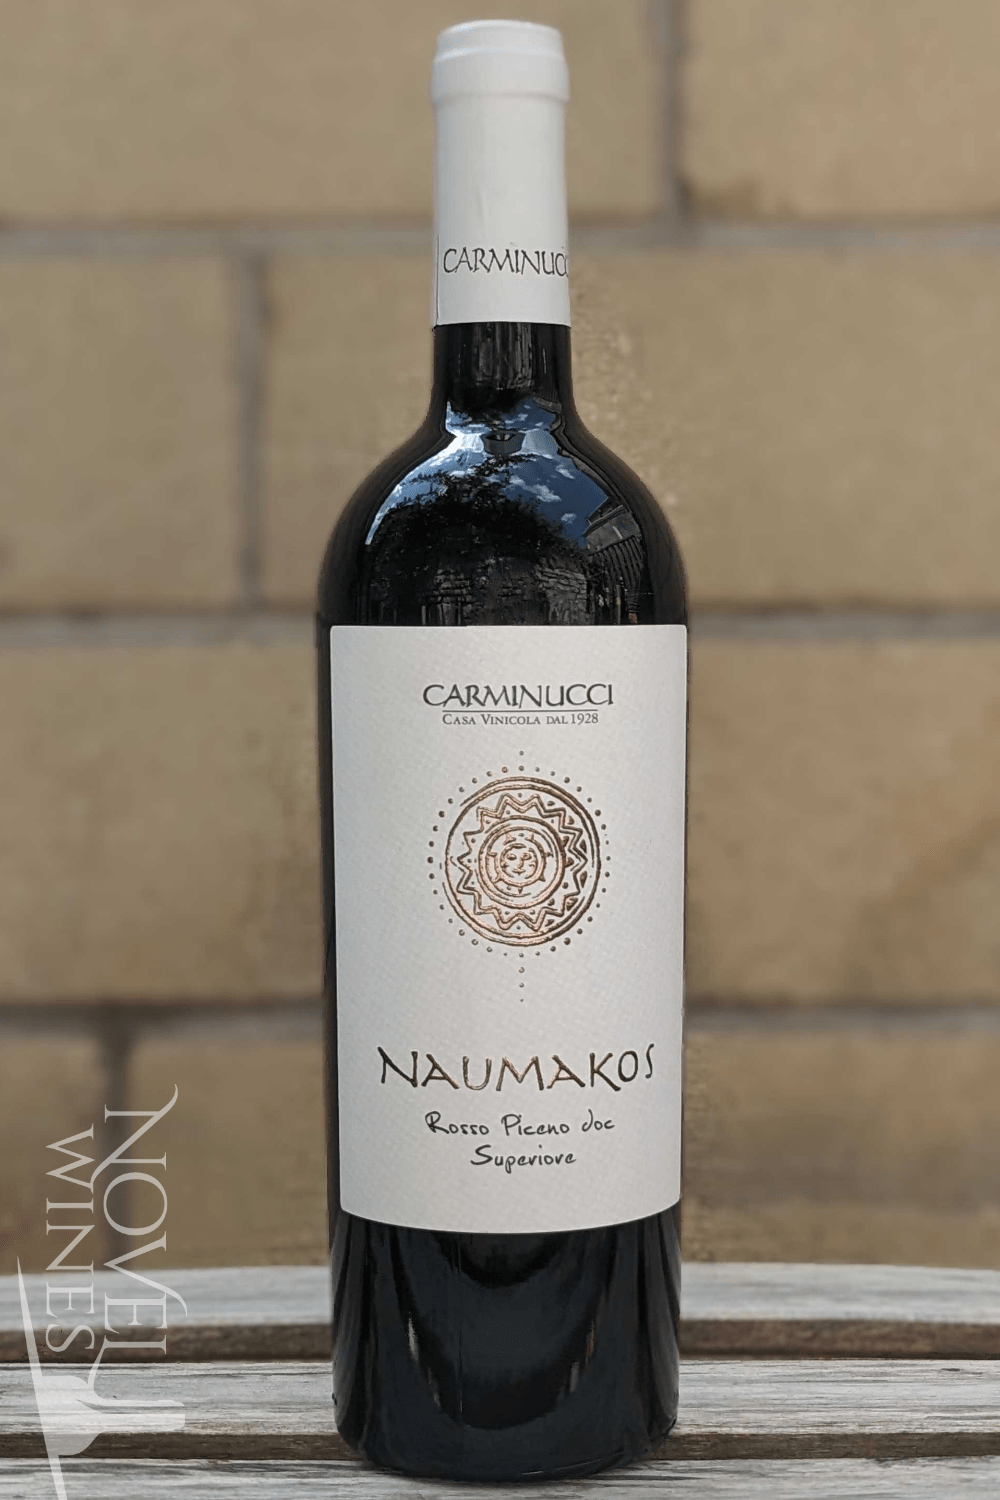 Carminucci Red Wine Carminucci 'Naumakos' Rosso Piceno Superiore 2019, Italy